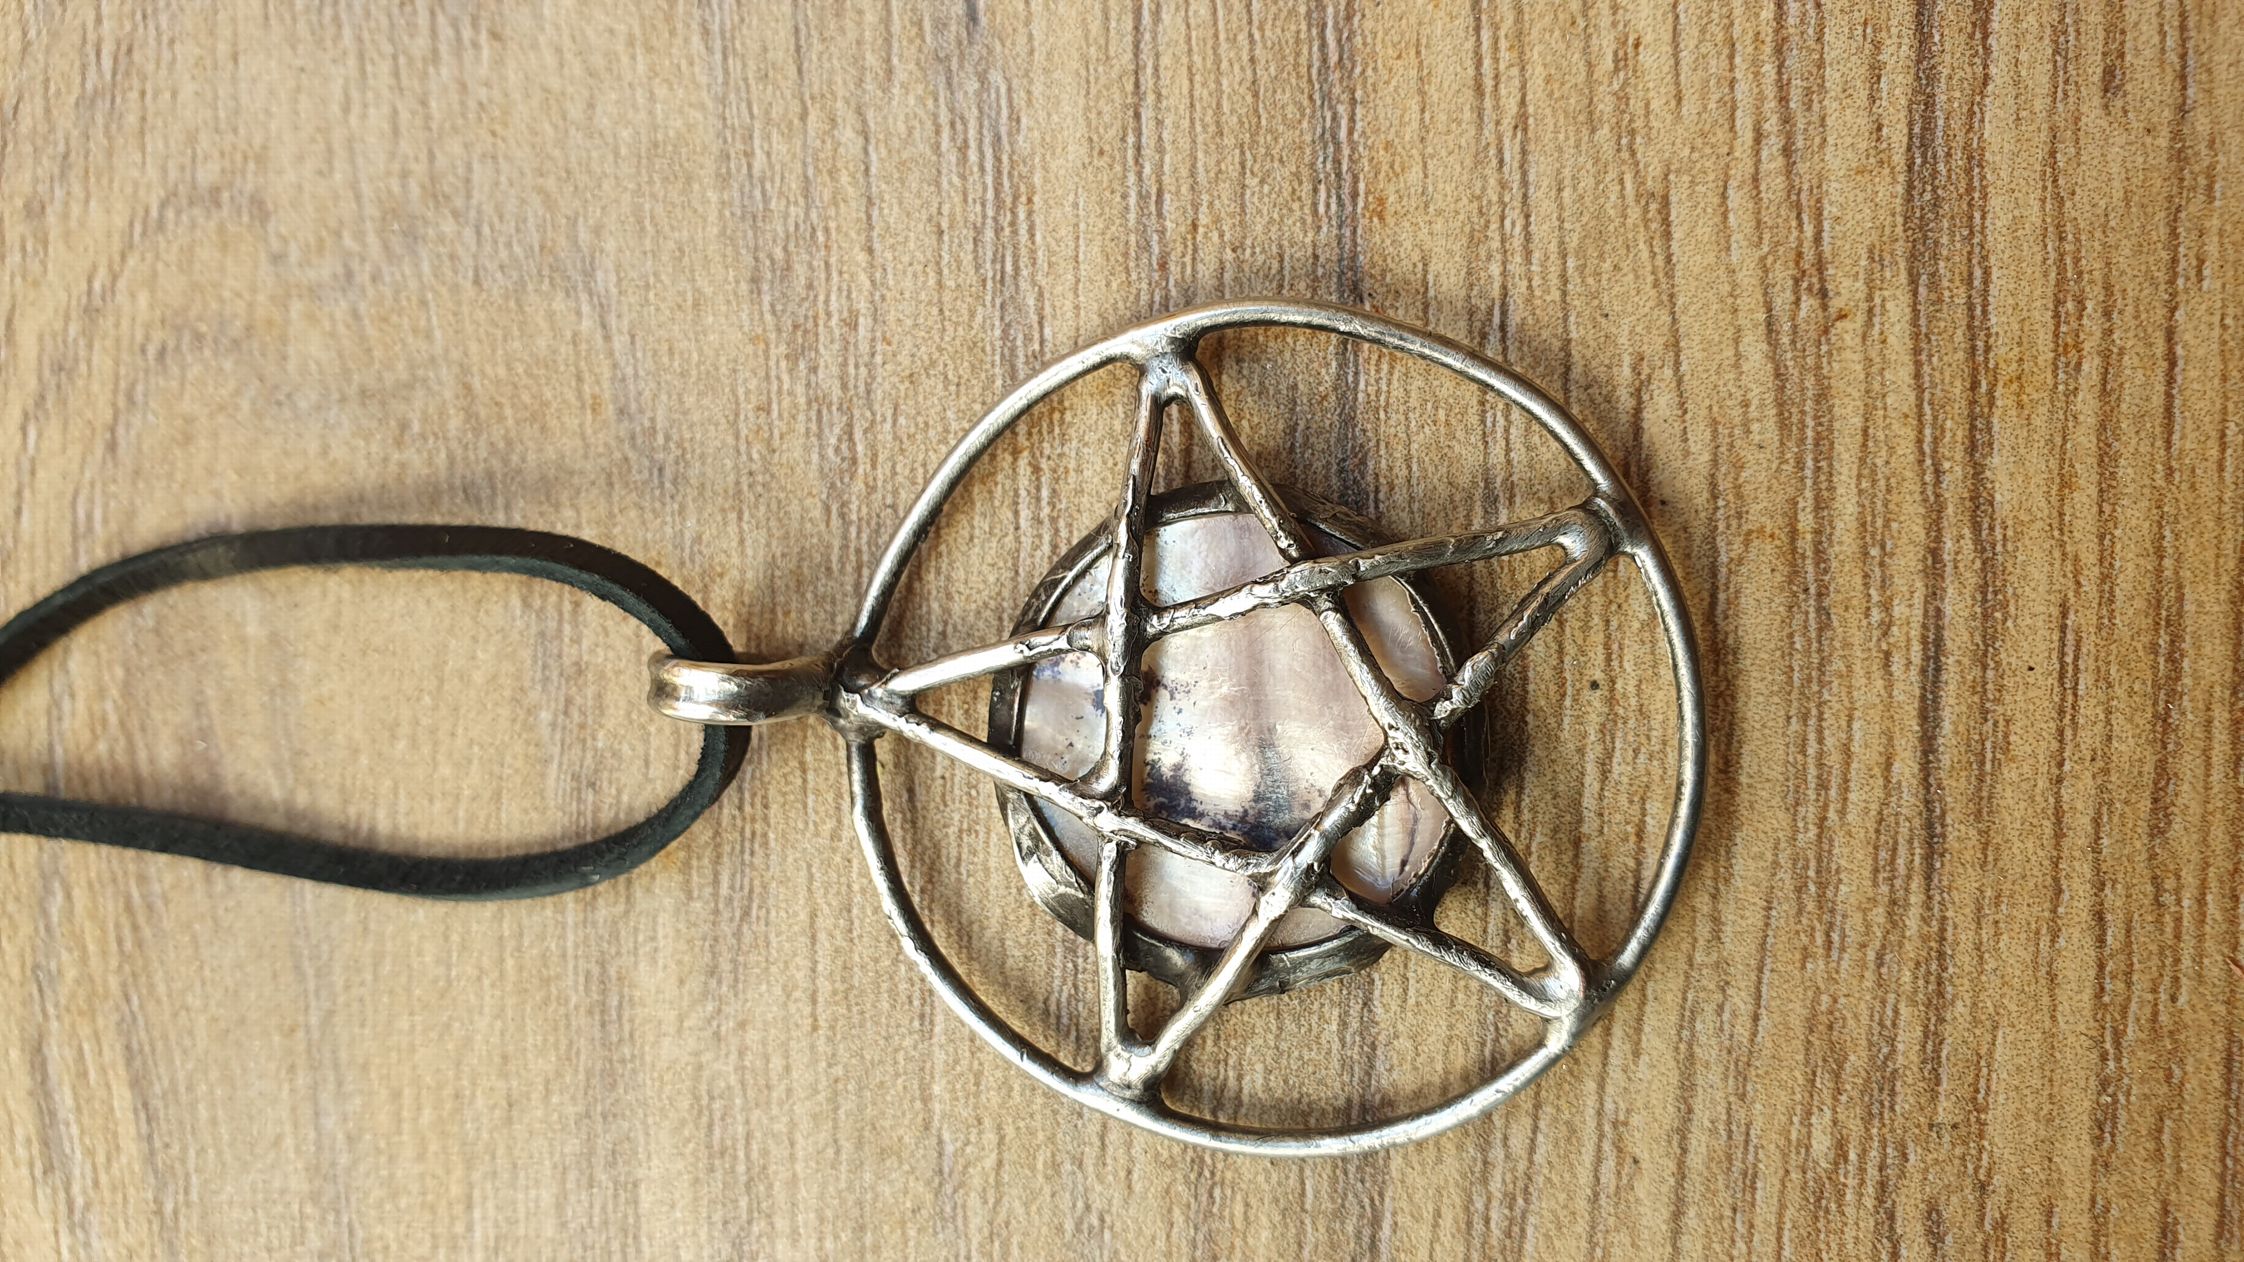 Cínovaný šperk s pentagramen na Perleti. Velikost 5 x 4 cm. Cena 500 Kč